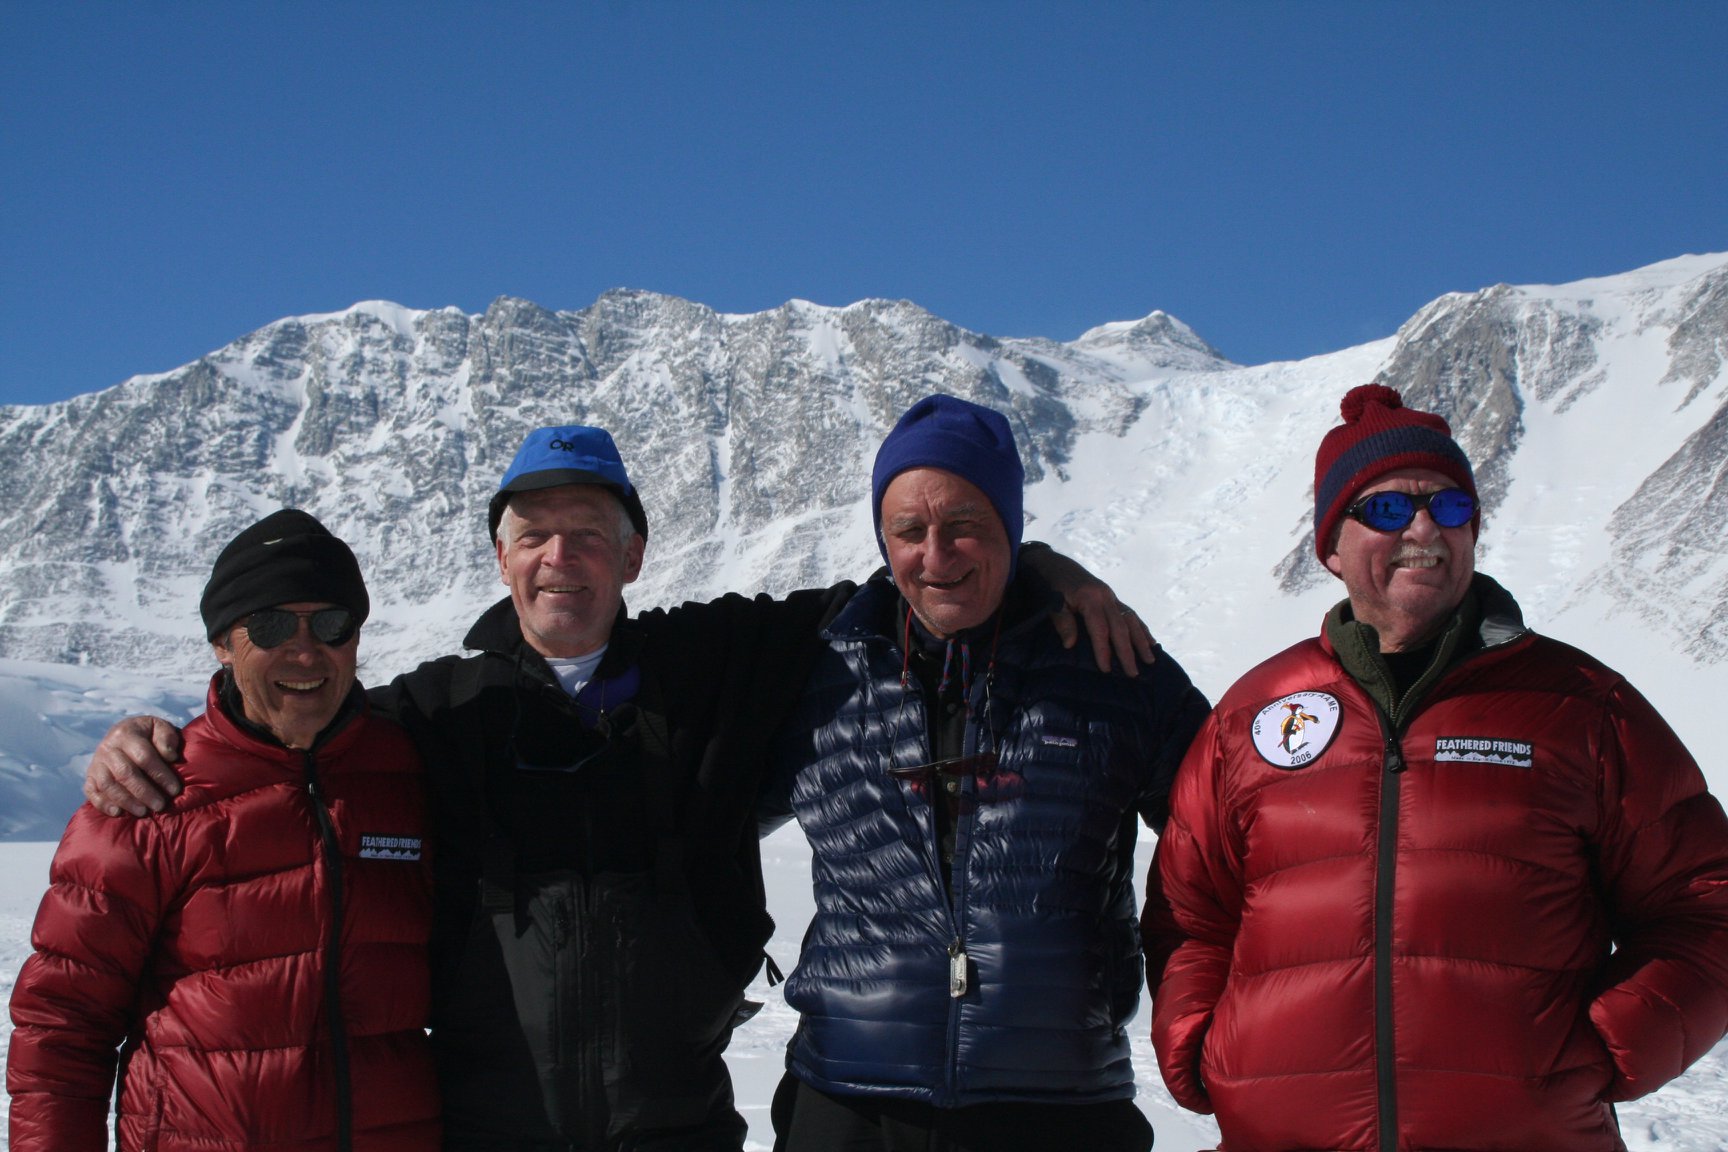 Эйчи Фукушима (Eiichi Fukushima), Джон Эванс (John Evans), Сэм Сильверштейн (Sam Silverstein) и  Брайан Мартс (Brian Marts) в базовом лагере массива Винсон,  декабрь 2006 года. Спустя 40 лет после того, как они совершили первовосхождение на вершину